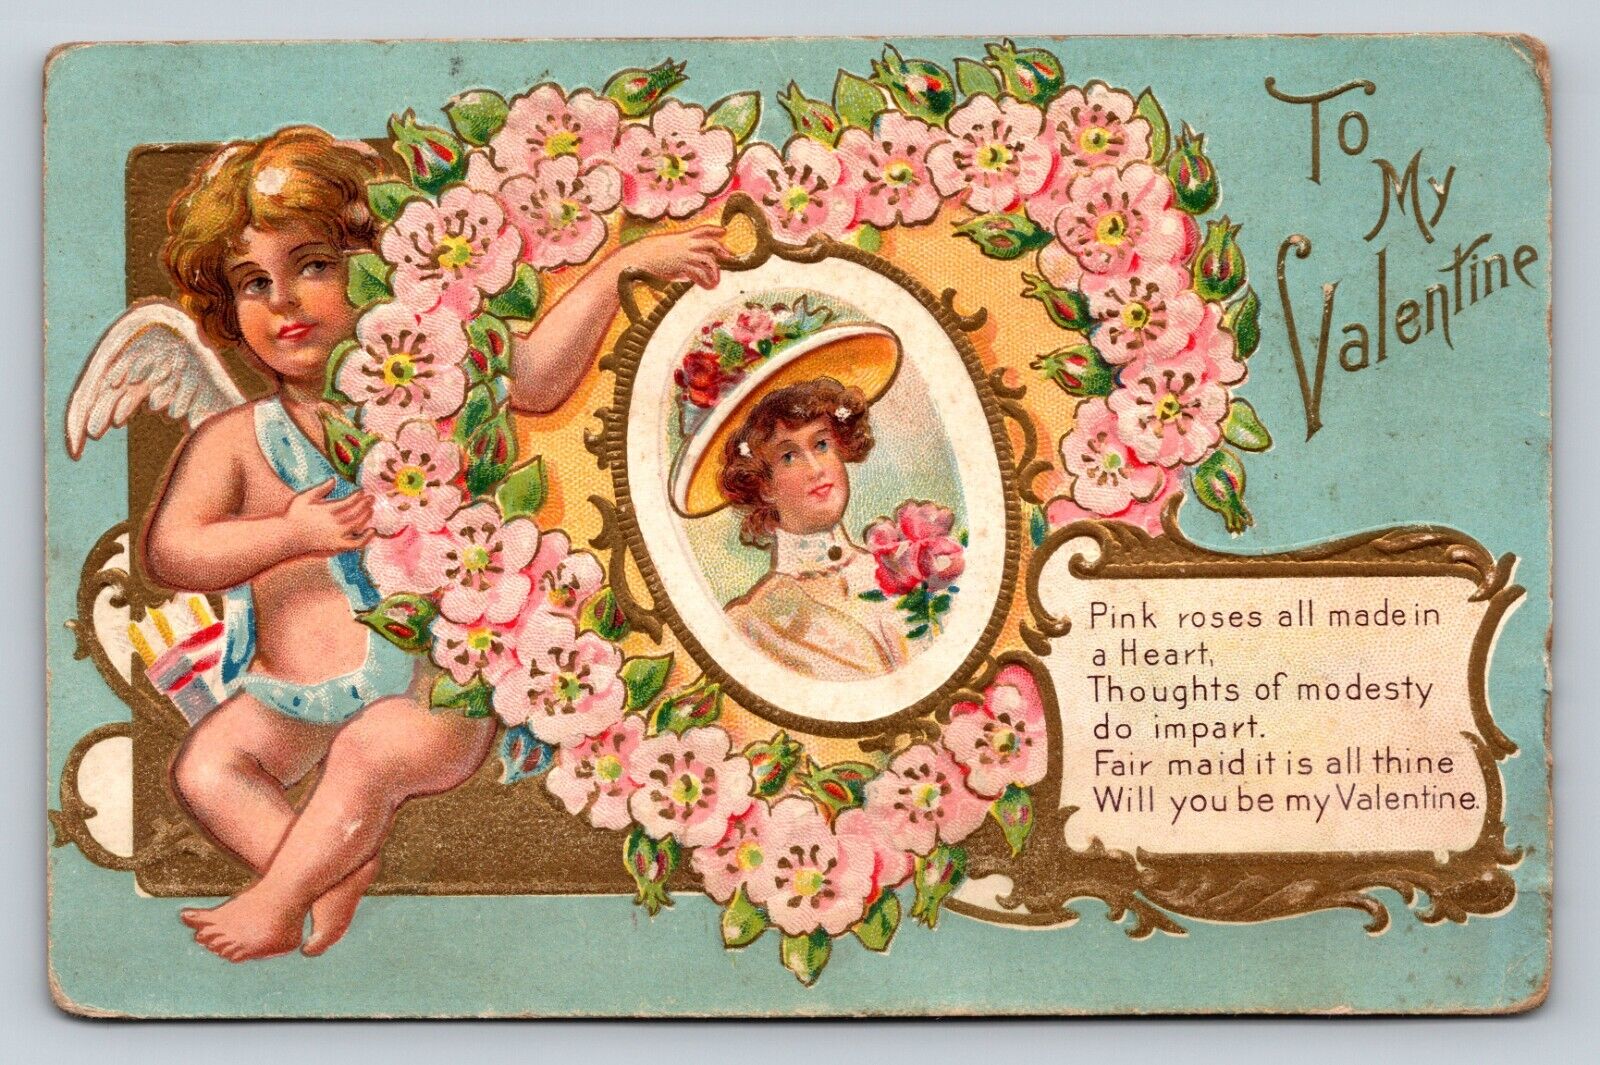 c1912 Valentine’s Day “To My Valentine” Cupid Love ANTIQUE Postcard